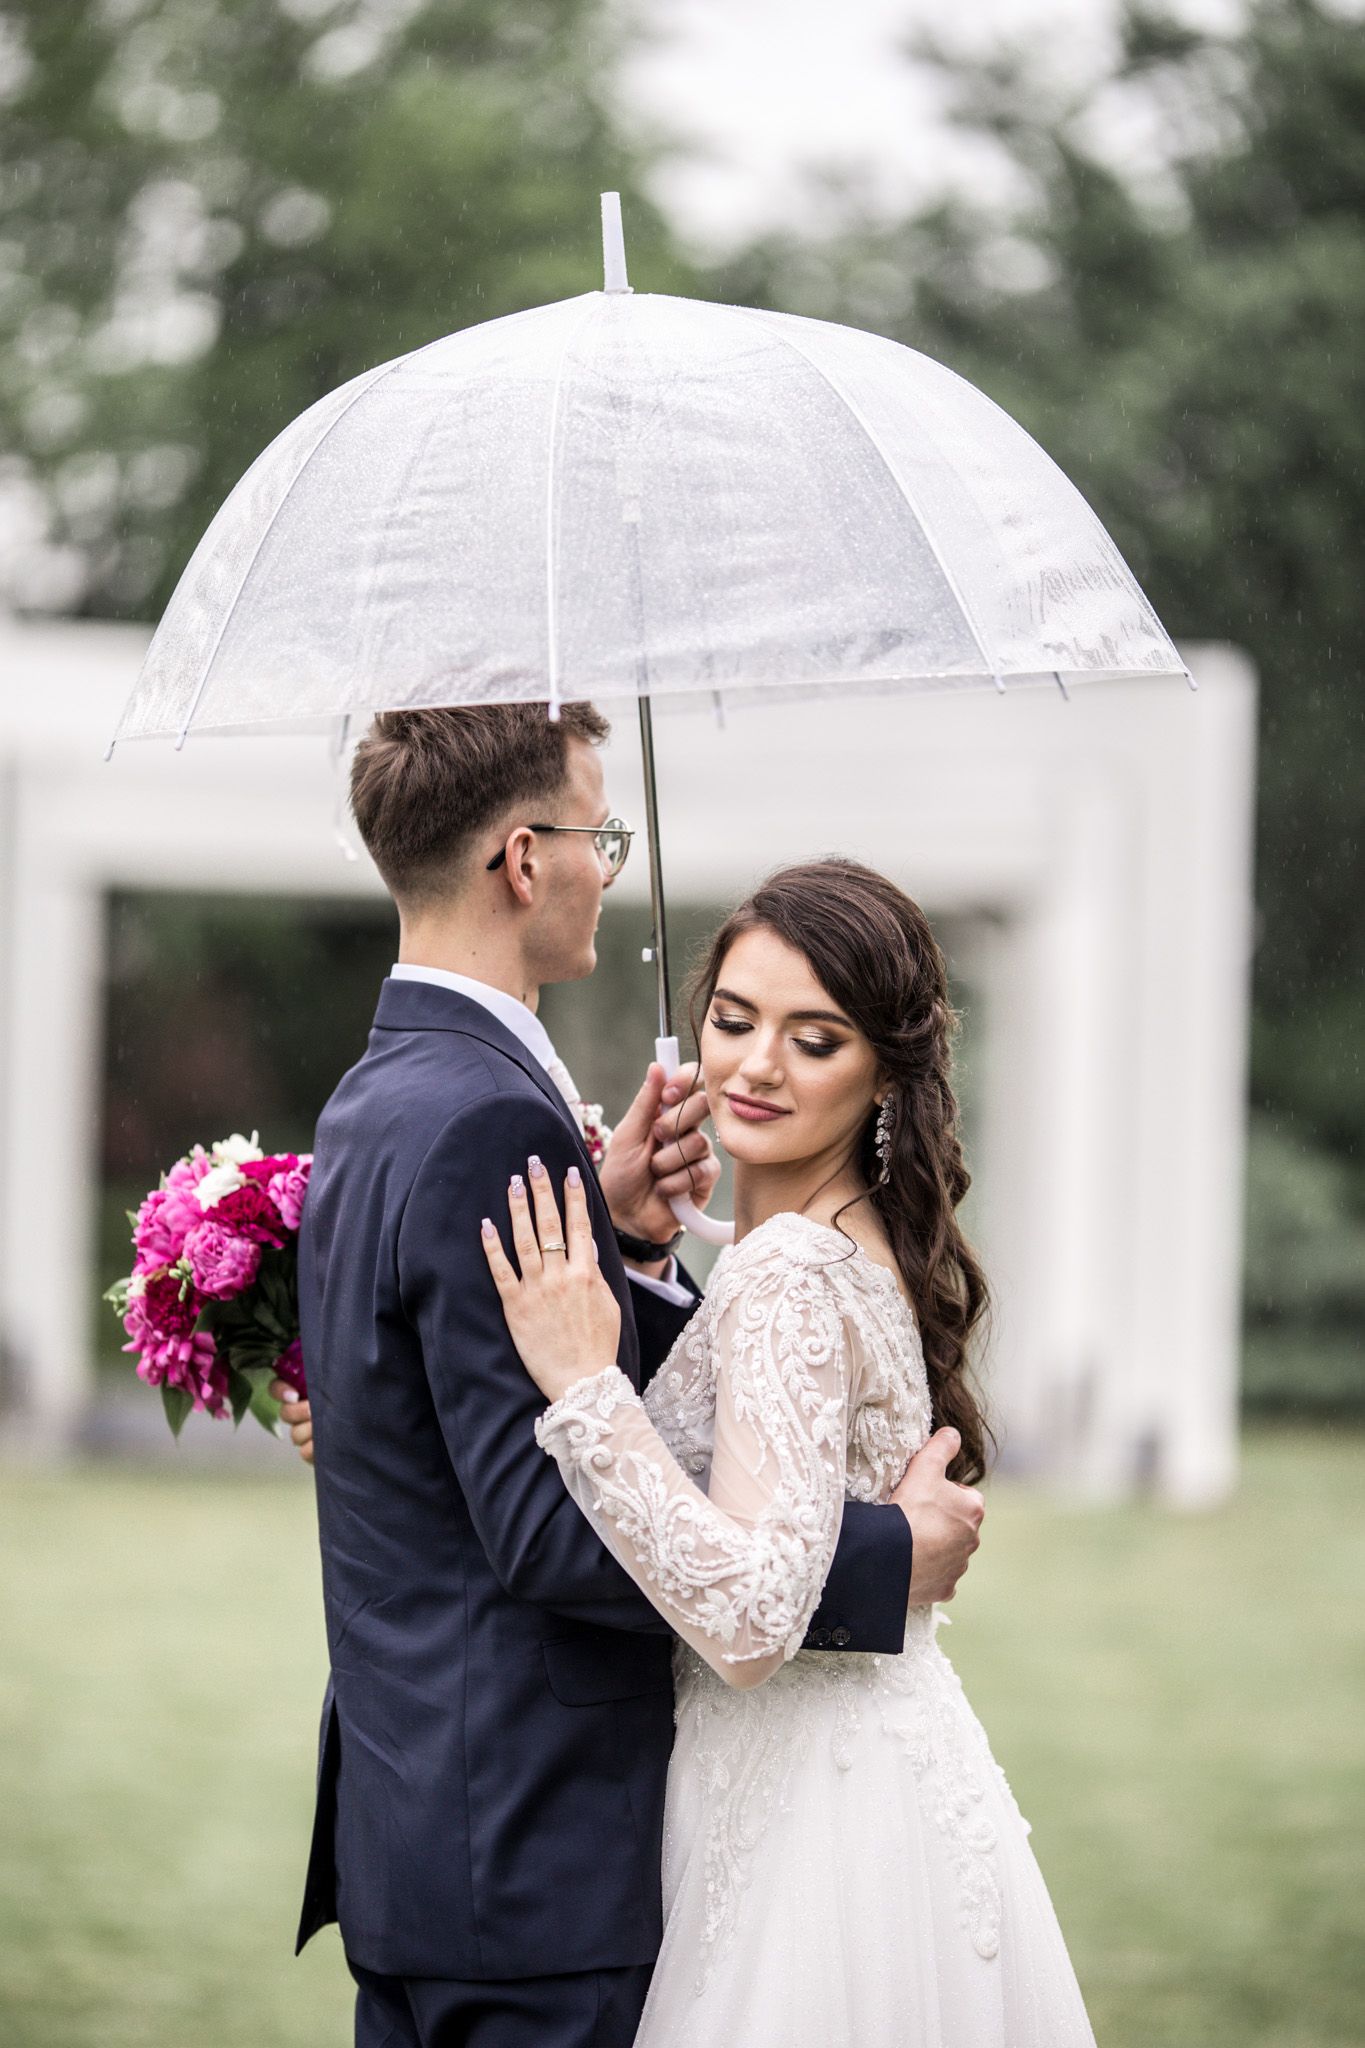 Sesja ślubna w deszczu pod przezroczystym parasolem